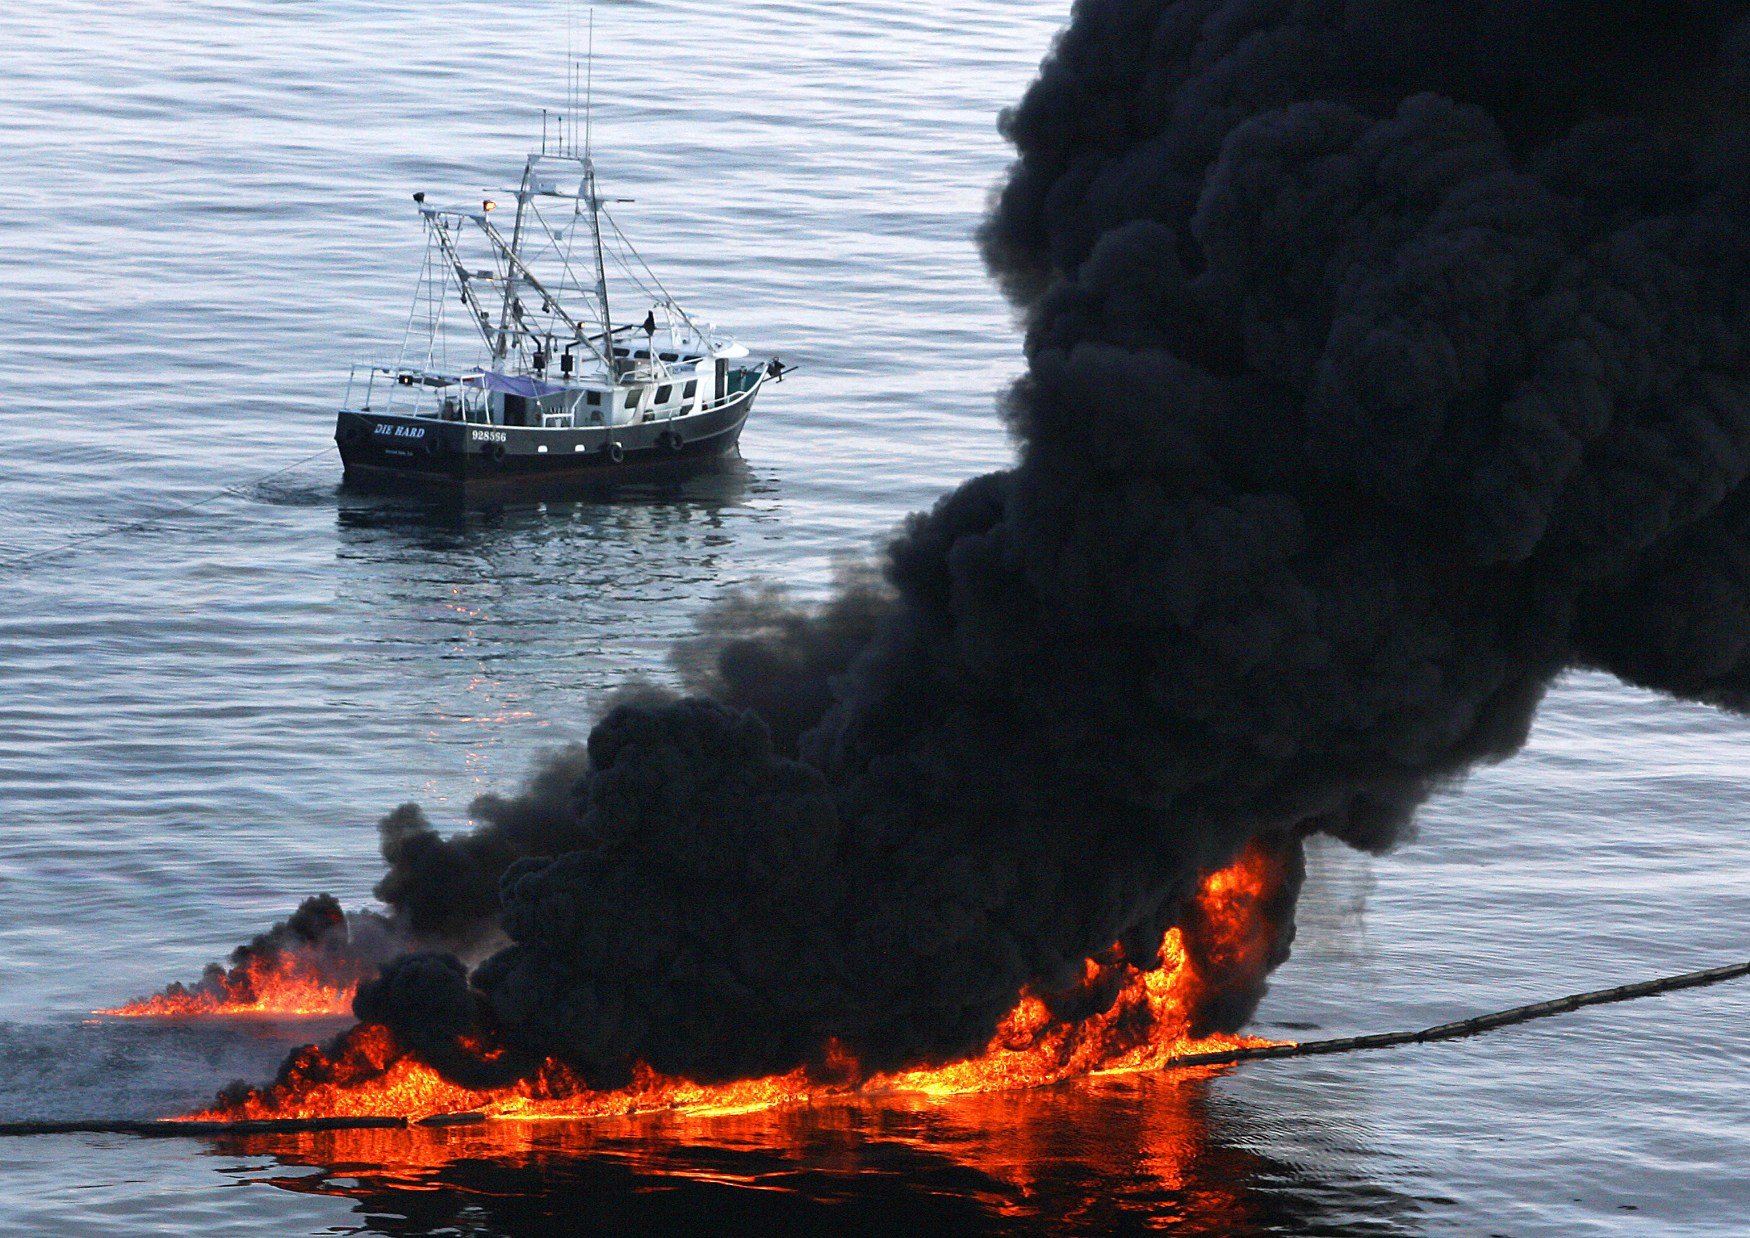 Утечка сил. Экологическая катастрофа в море разлив нефти. Разлитие нефти в мексиканском заливе. Экологическая катастрофа в мексиканском заливе. Экологическая катастрофа 2010 года в мексиканском заливе.